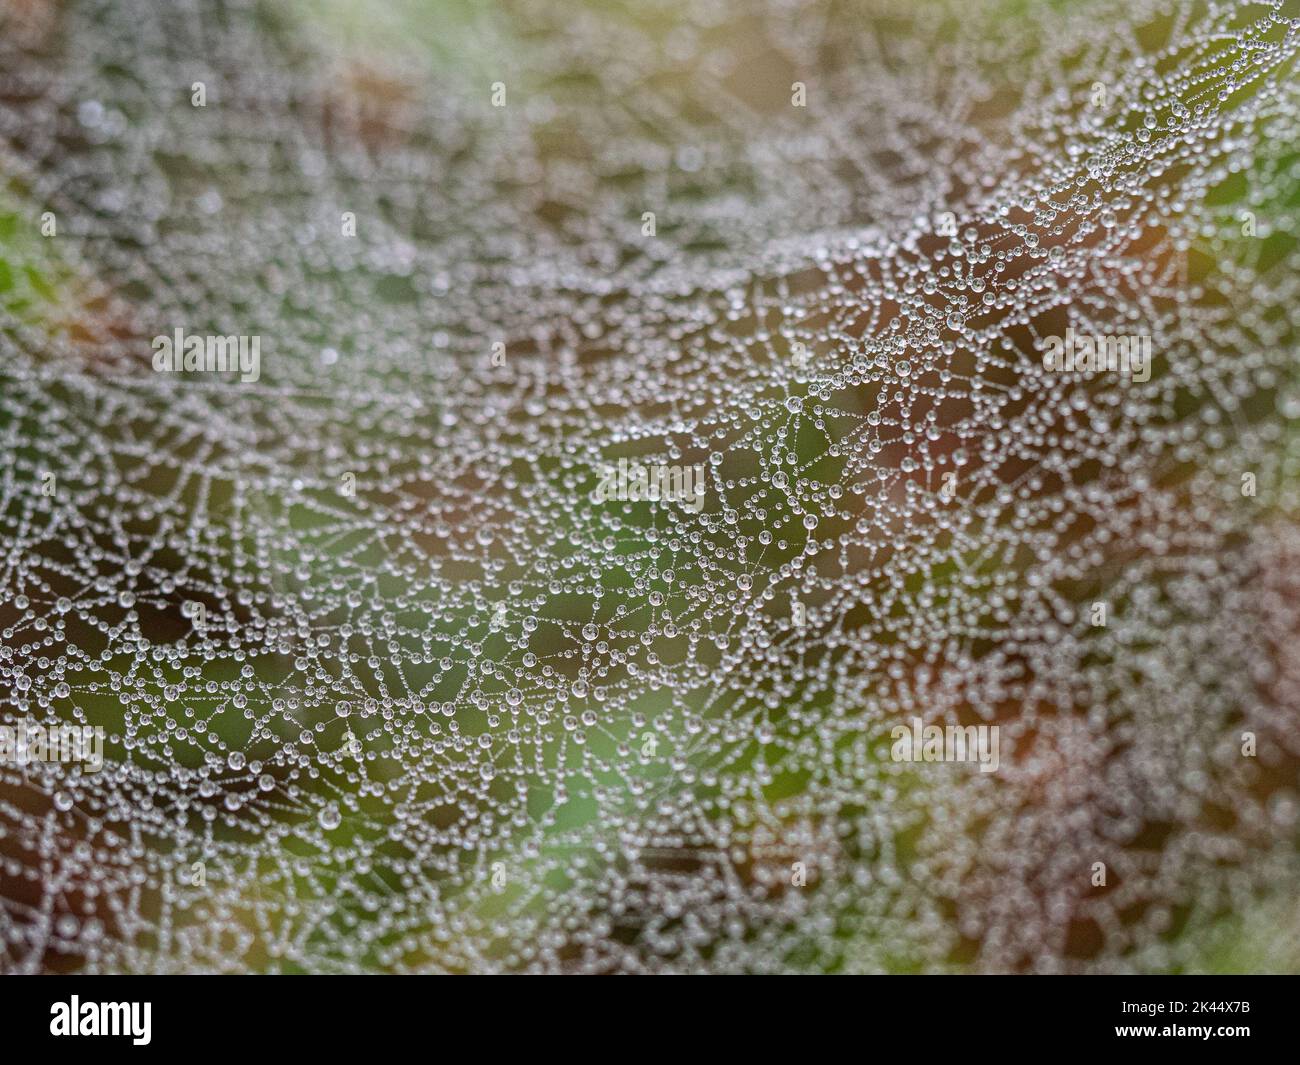 Tautropfen, die auf einem Spinnennetz gesammelt wurden, das im frühen Morgenlicht funkelt Stockfoto